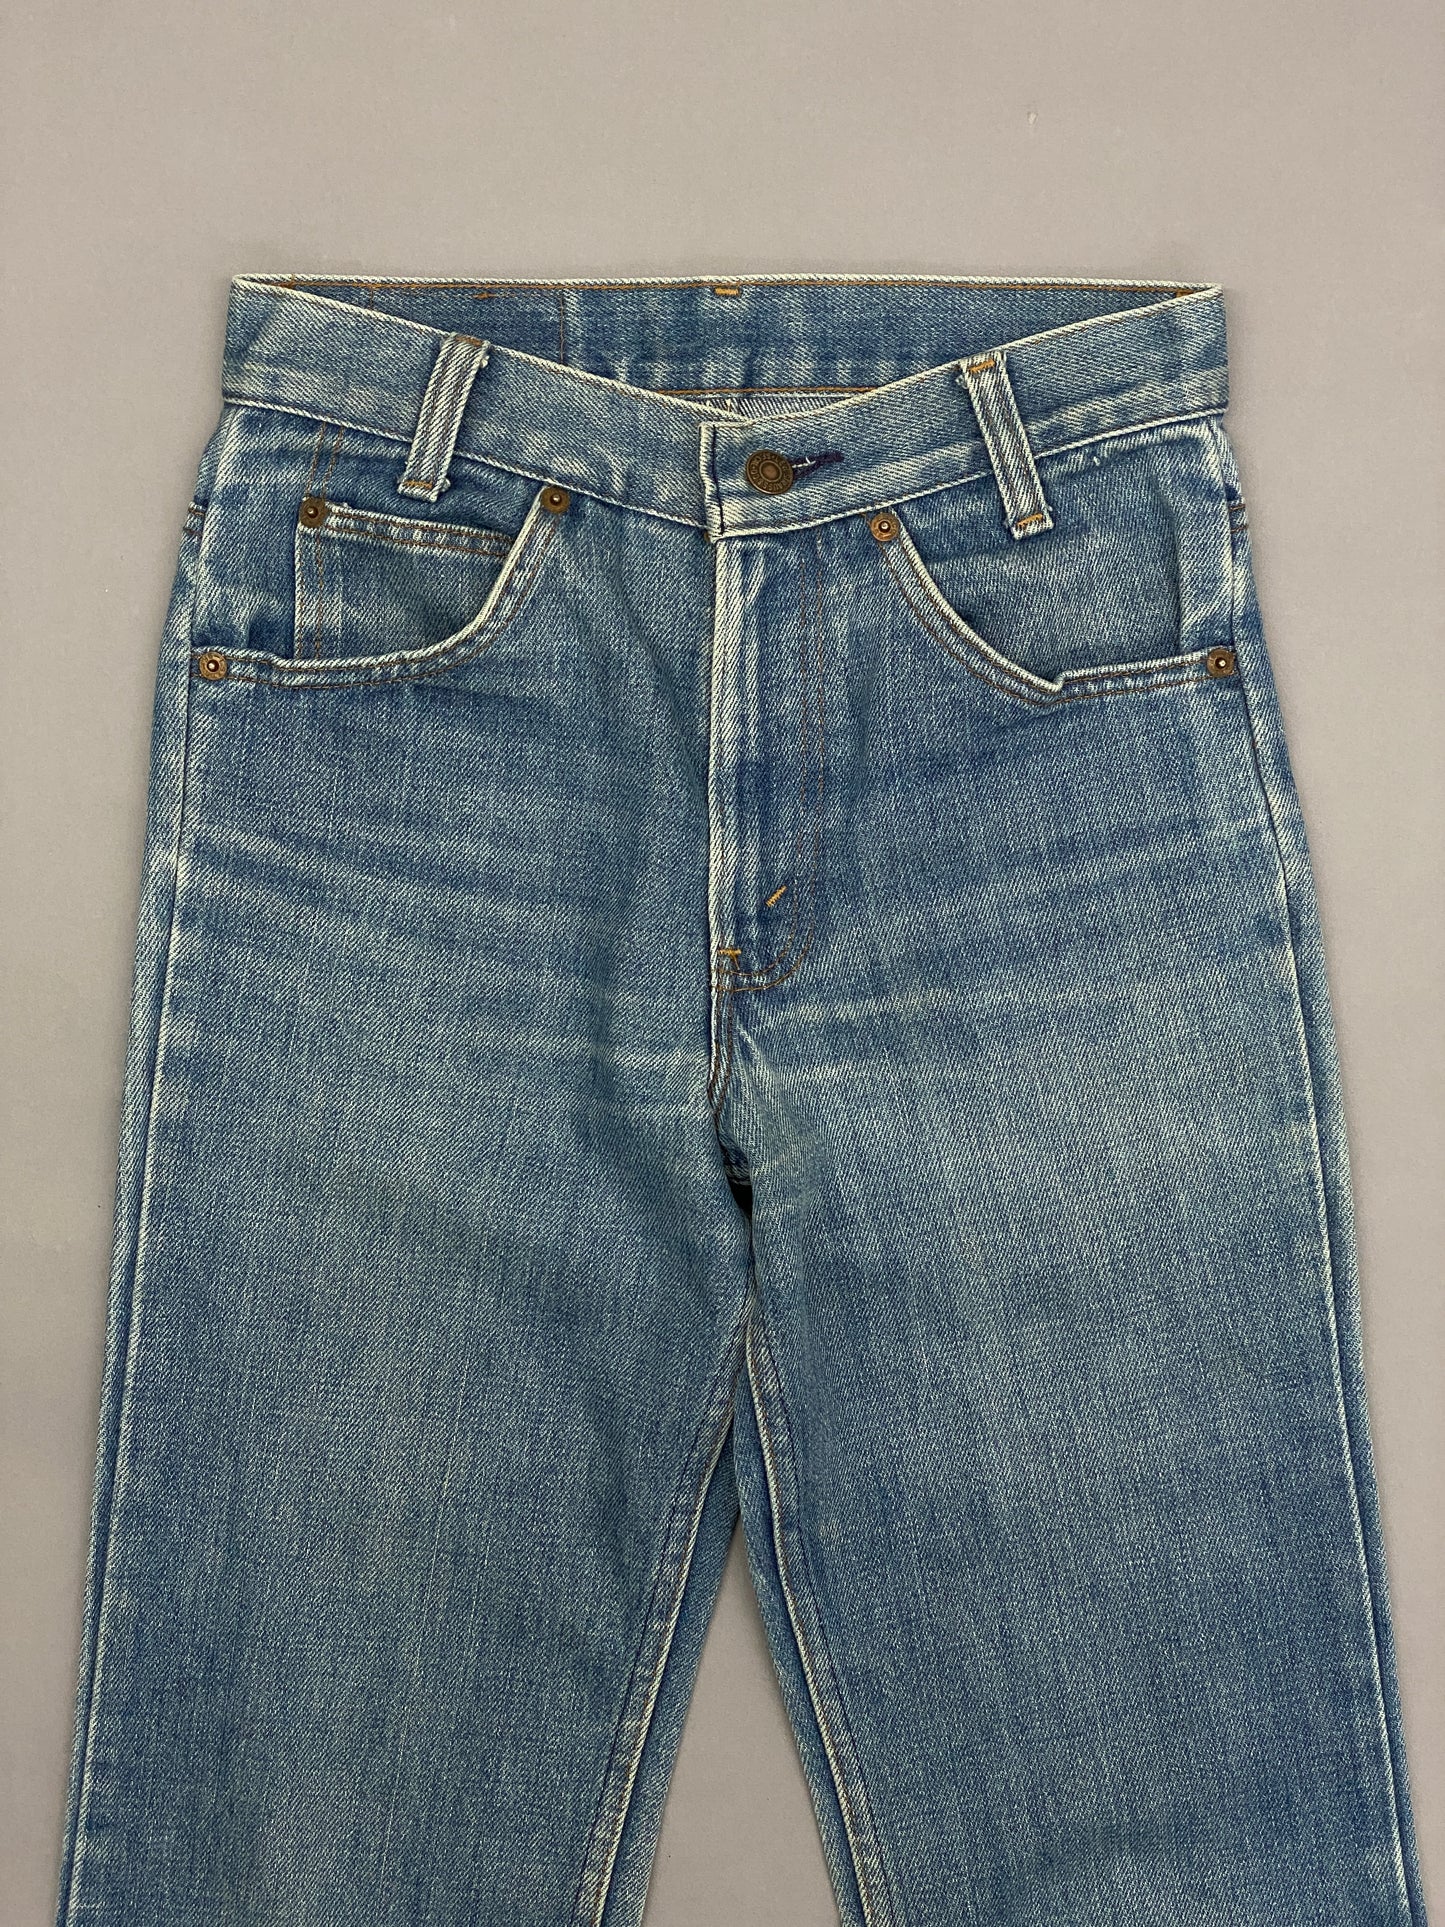 Levis Orange Tab Vintage Jeans - 27